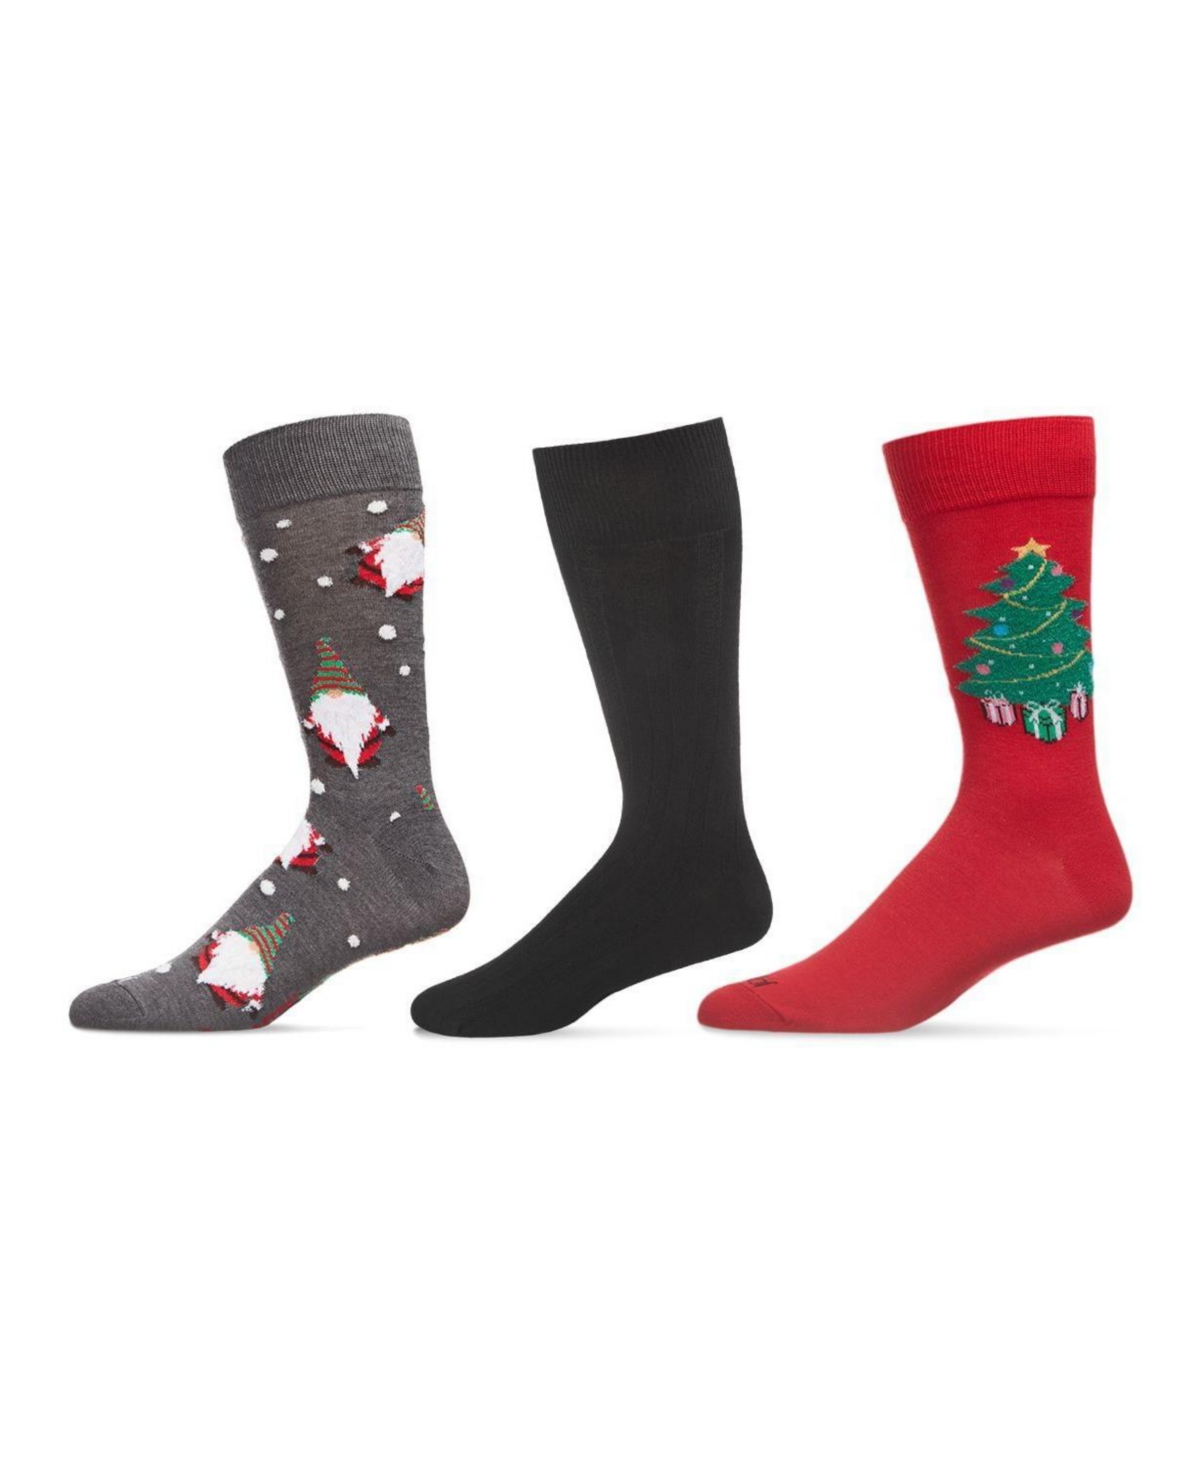 Men's Christmas Assortment Socks, Pack of 3 - Dark Gray, Black, Red